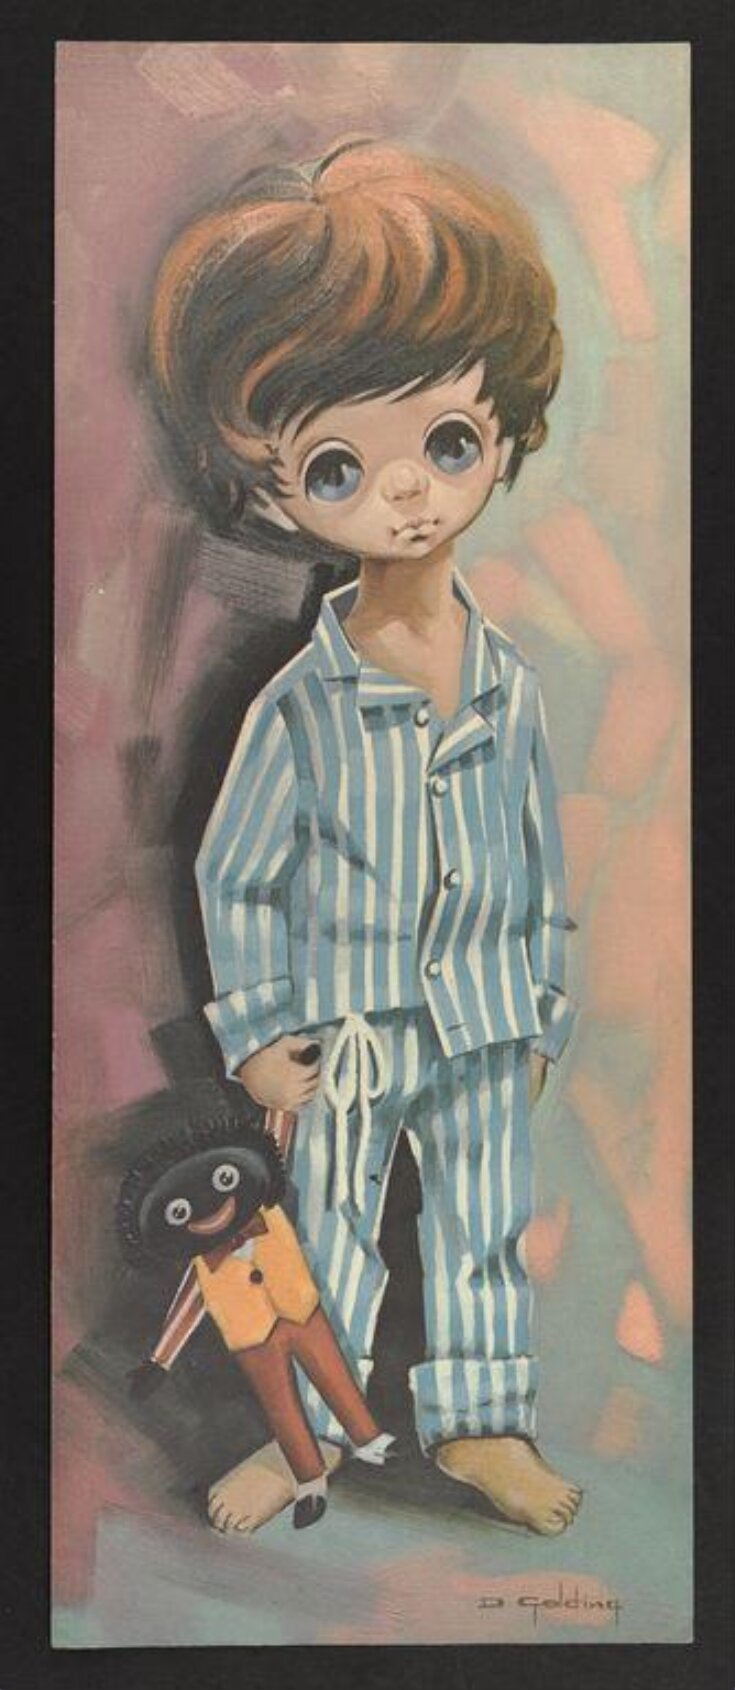 Large-eyed boy holding a golliwog top image